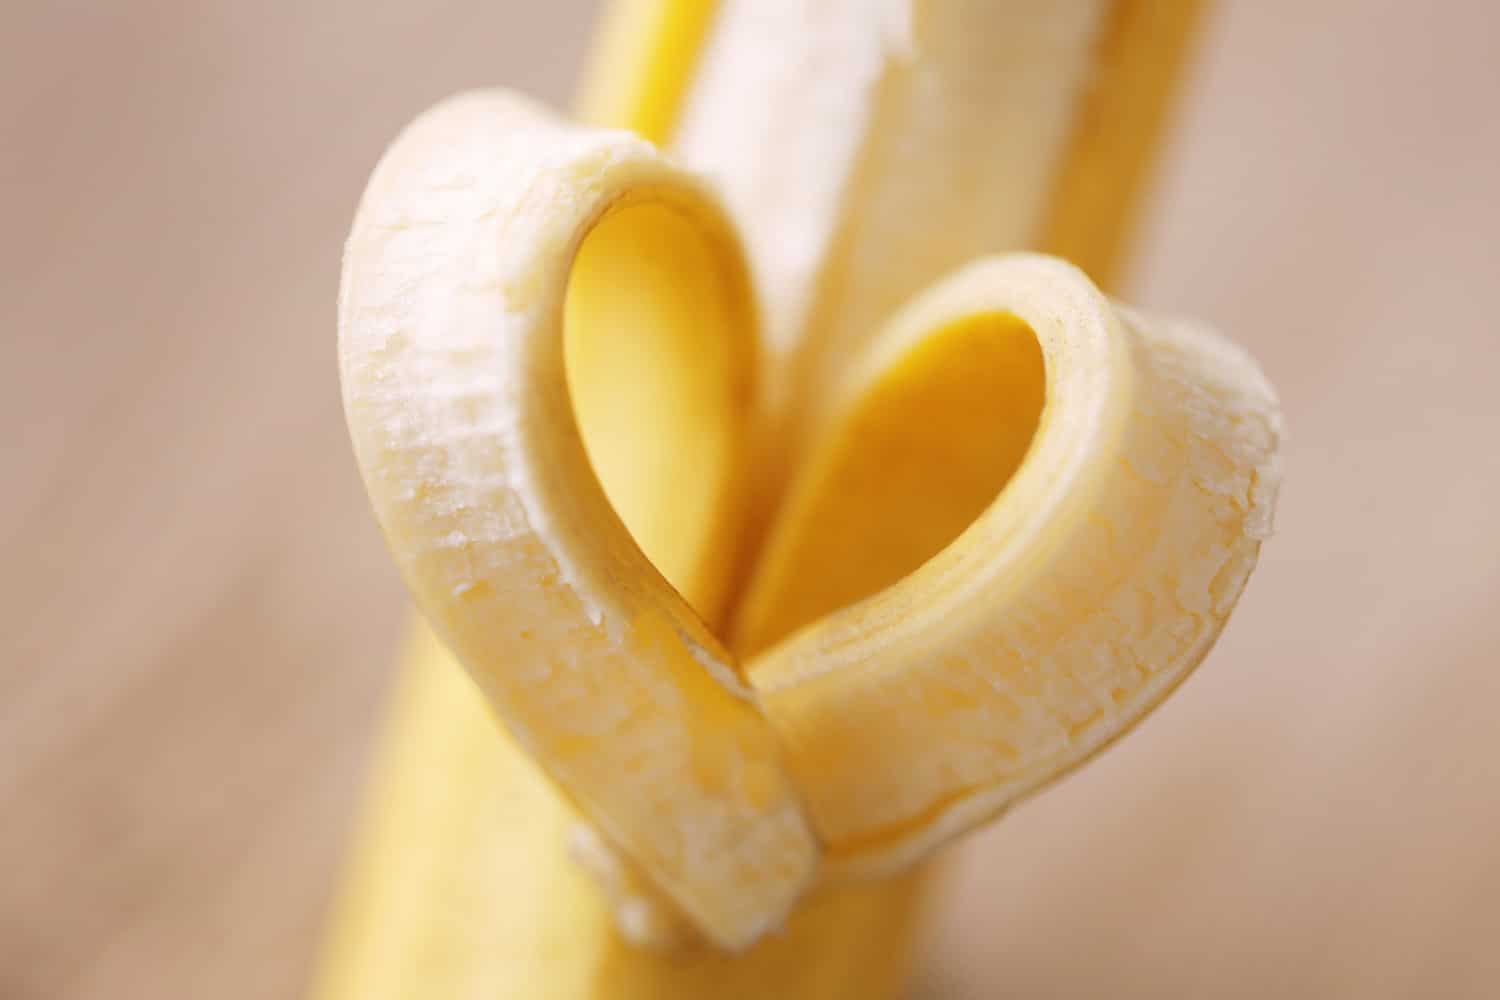 Megeszed a banán héját? Pedig meg kellene